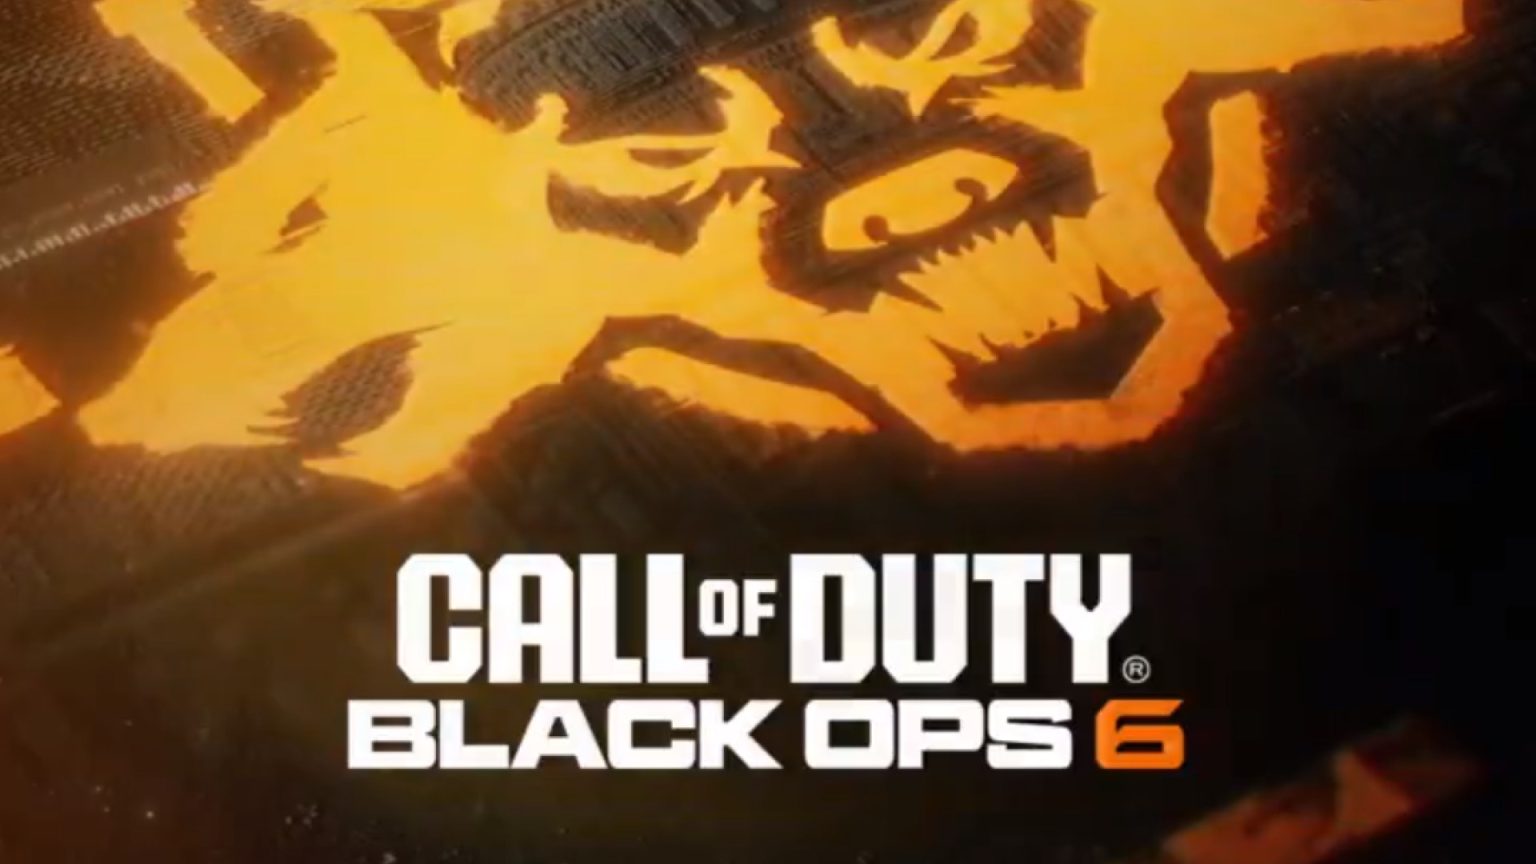 Niemand wordt vergeten: Call of Duty: Black Ops 6 lijkt verkrijgbaar te zijn op Xbox One en PlayStation 4.